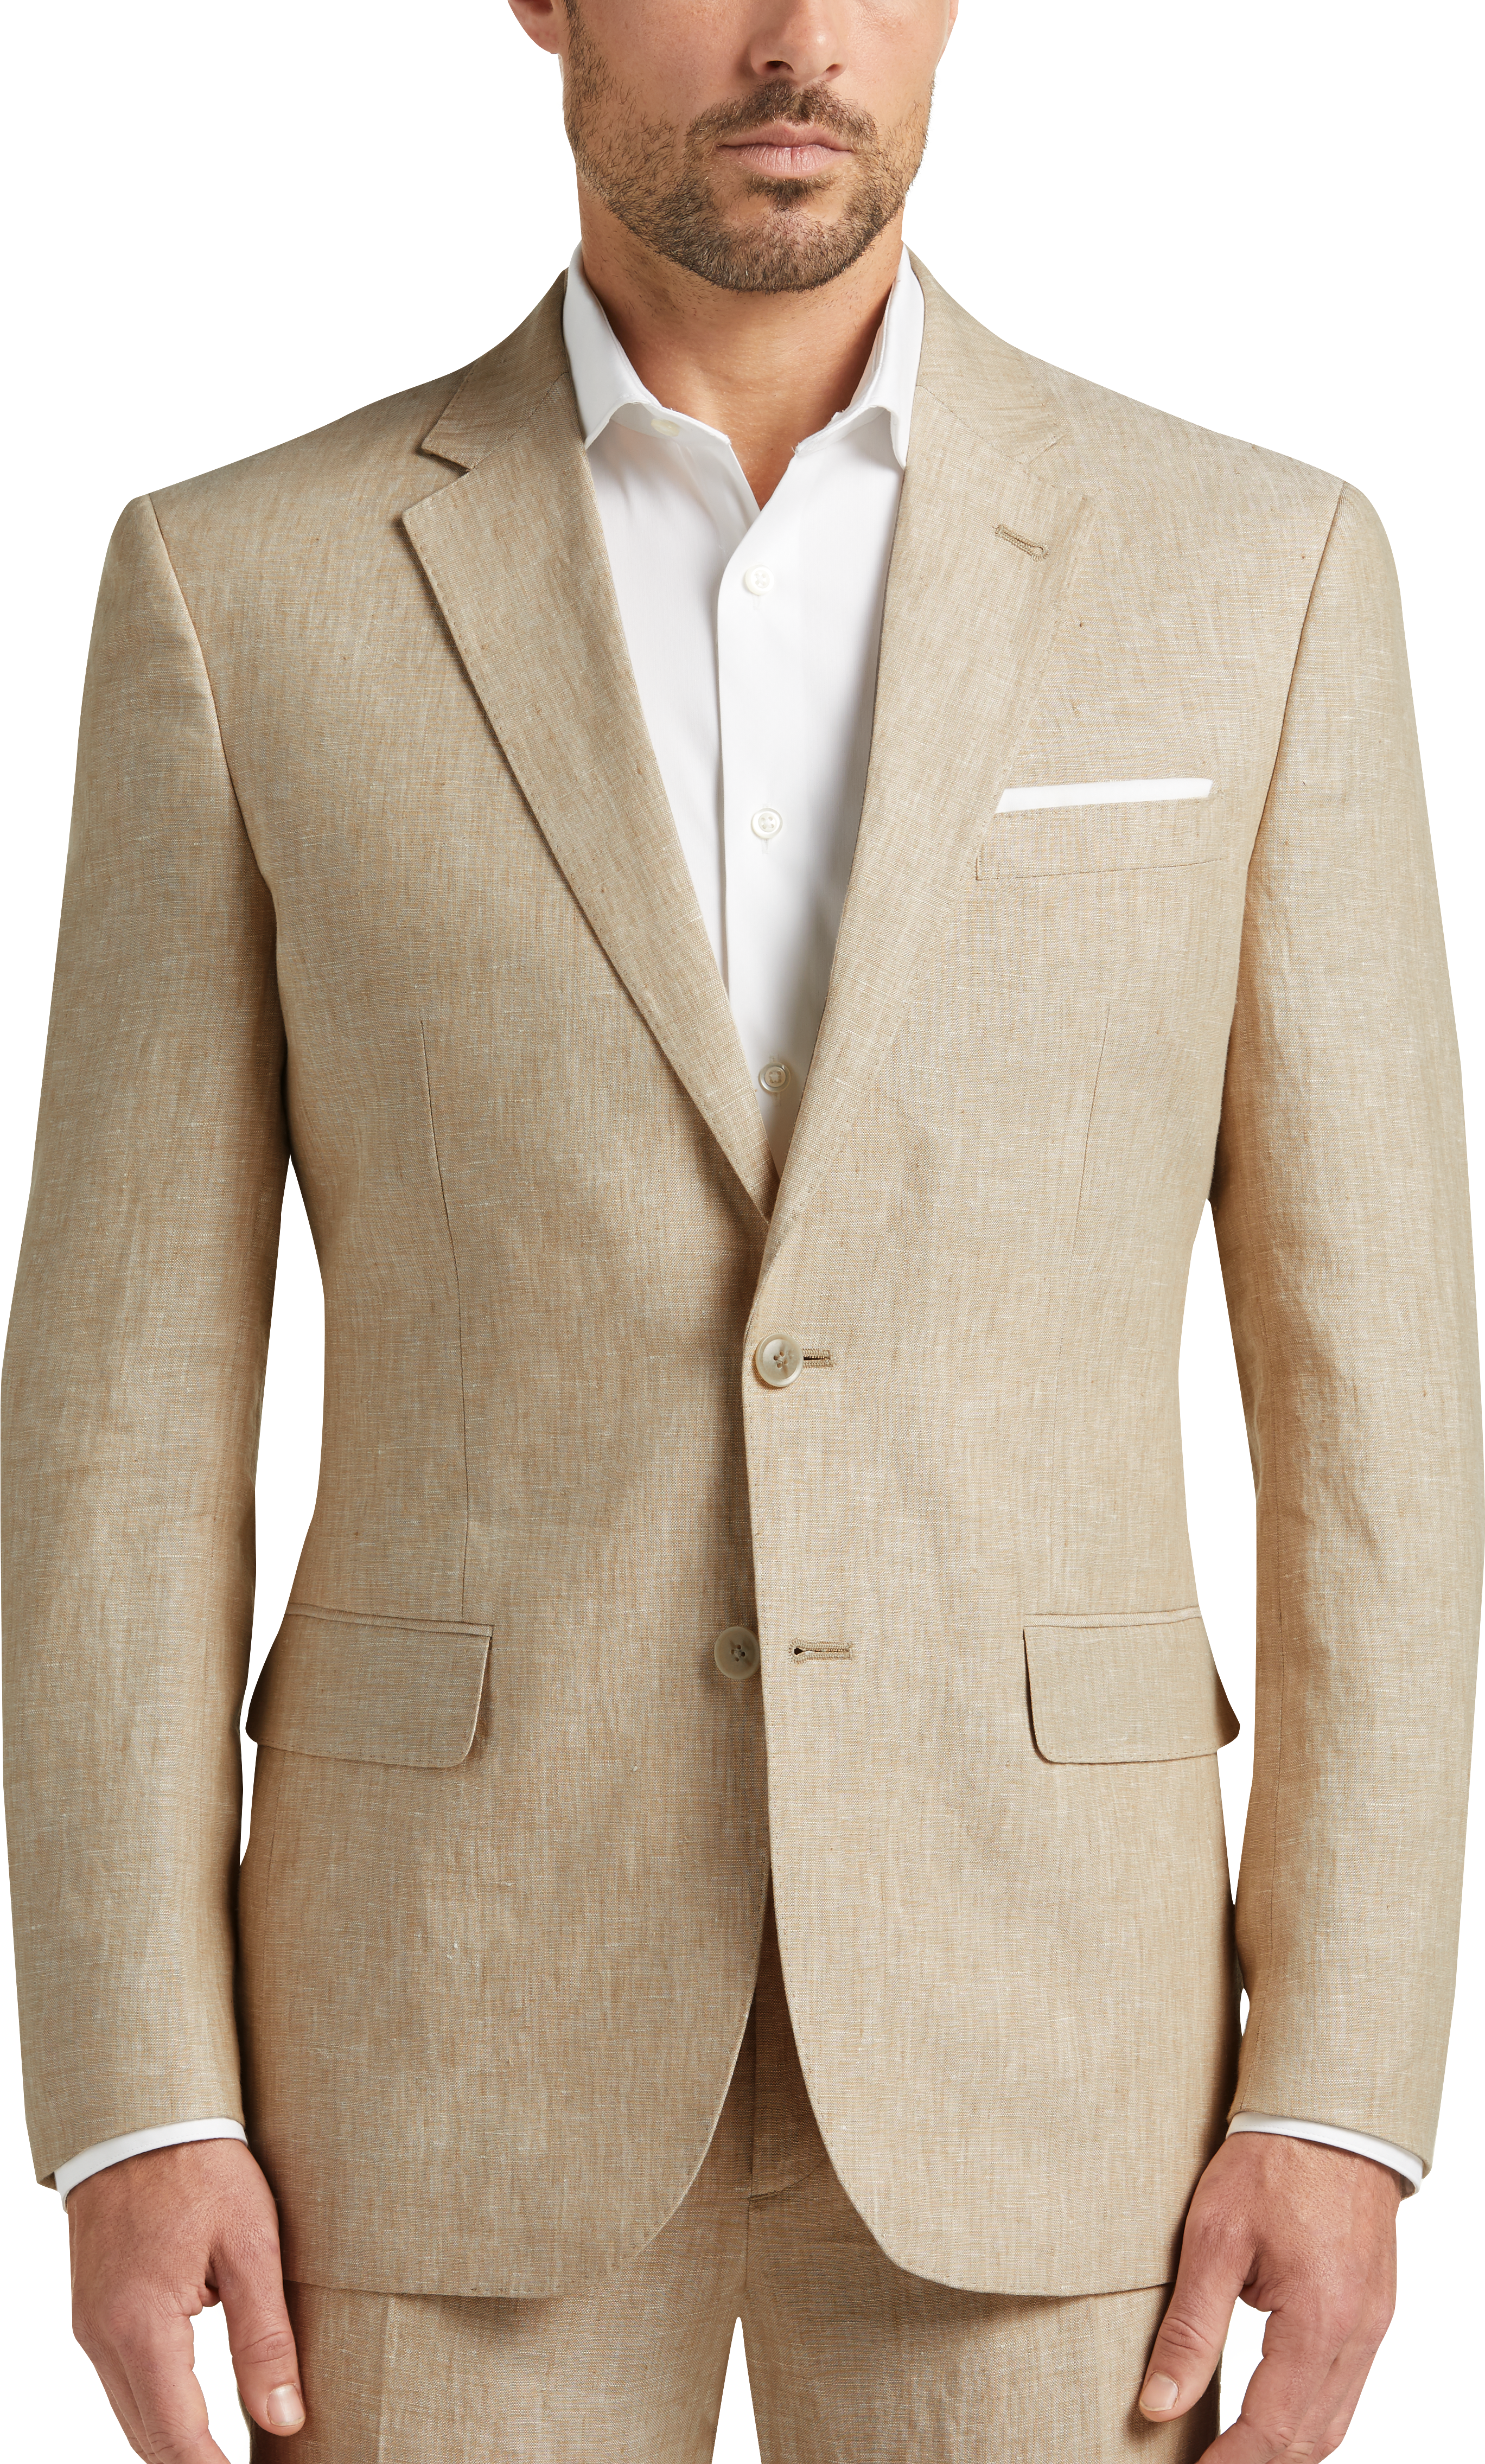 JOE Joseph Abboud Linen Slim Fit Suit Separates, Tan - - Men's Wearhouse